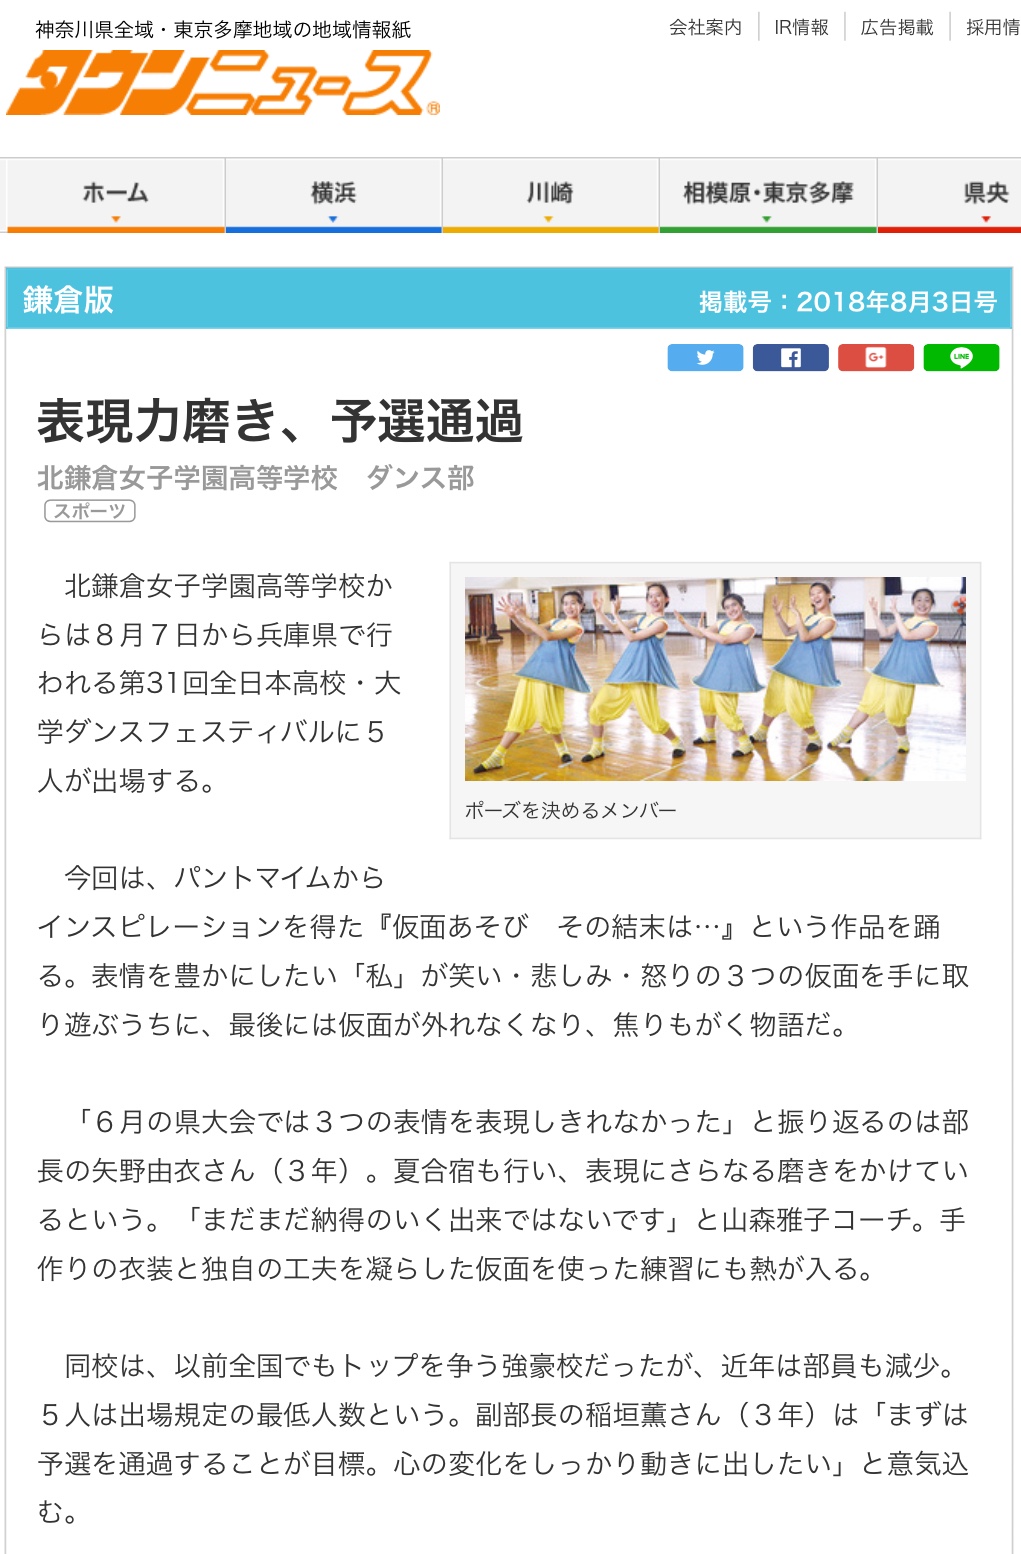 タウンニュースにダンス部の記事が掲載されました 北鎌倉女子学園 学園生活 部活動 ダンス部